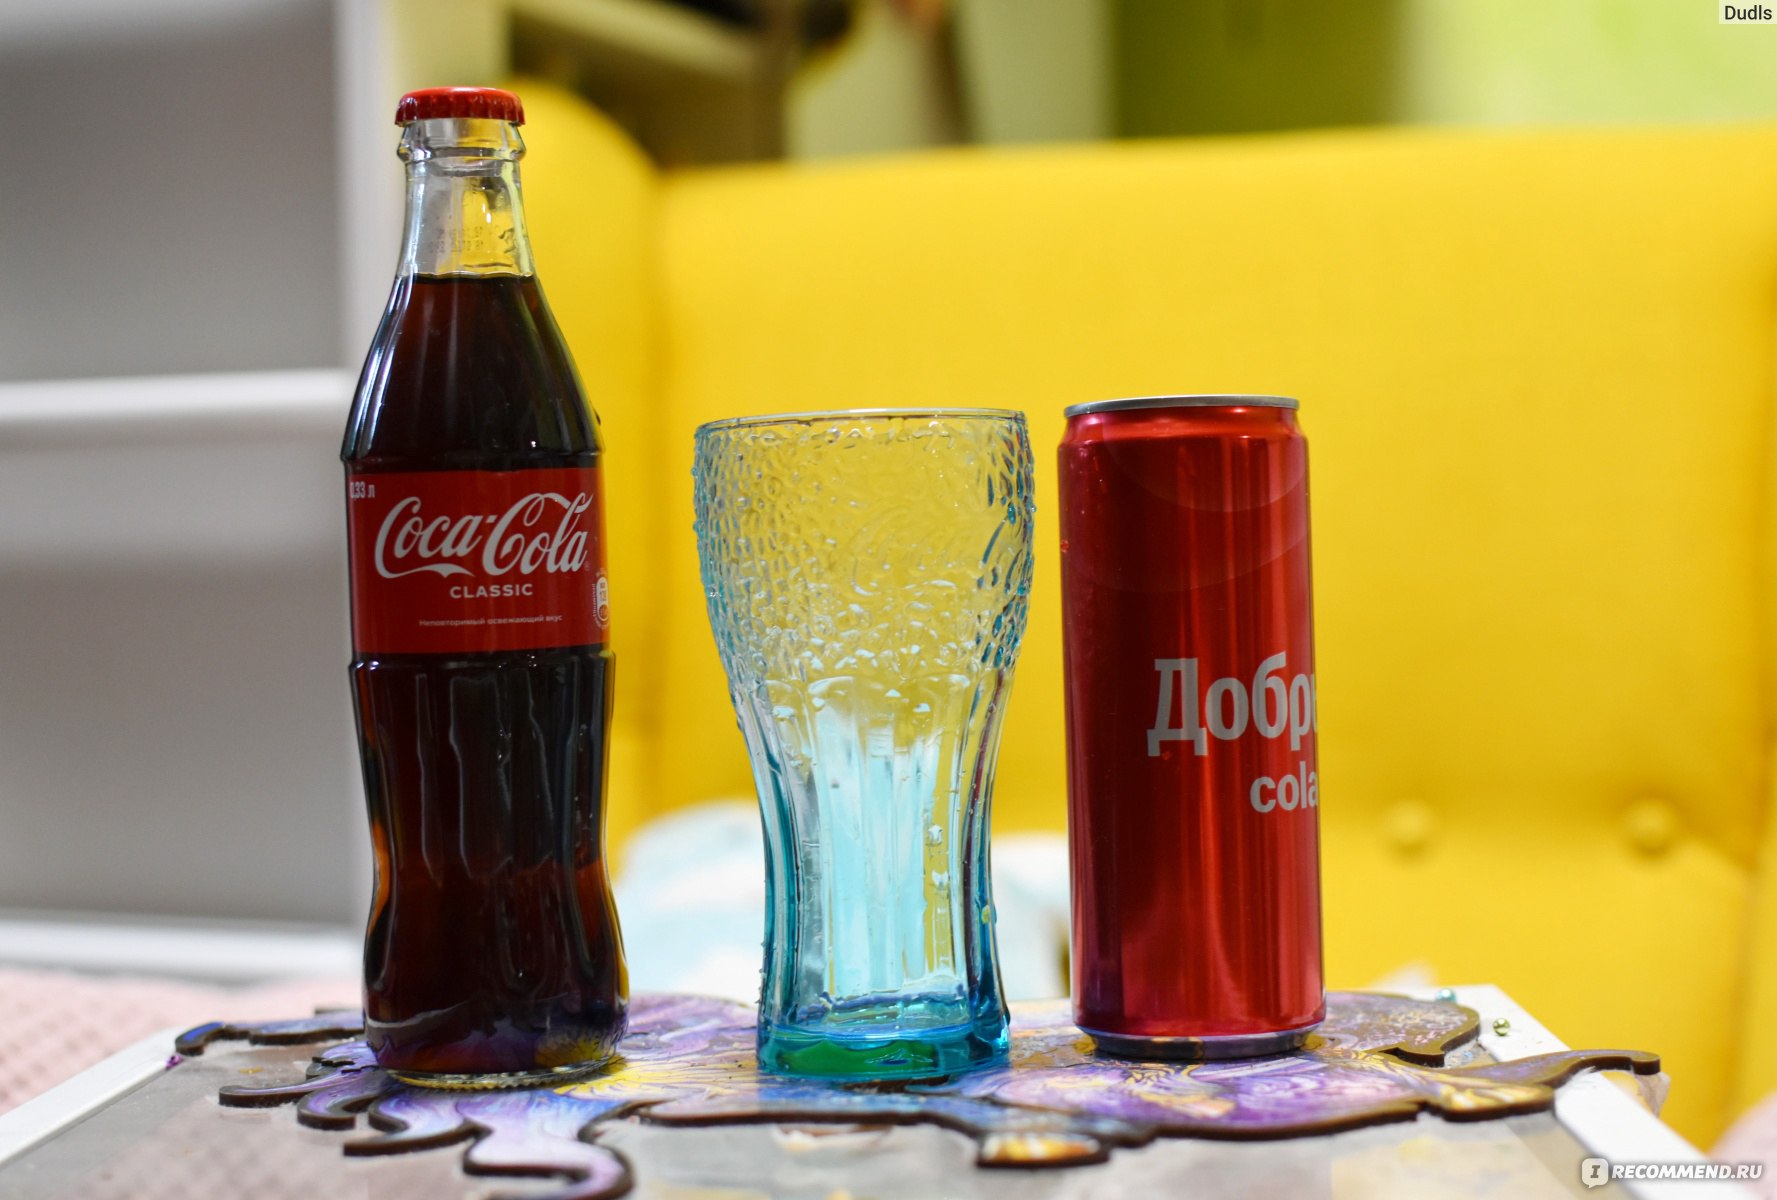 Напиток газированный Добрый Cola фото